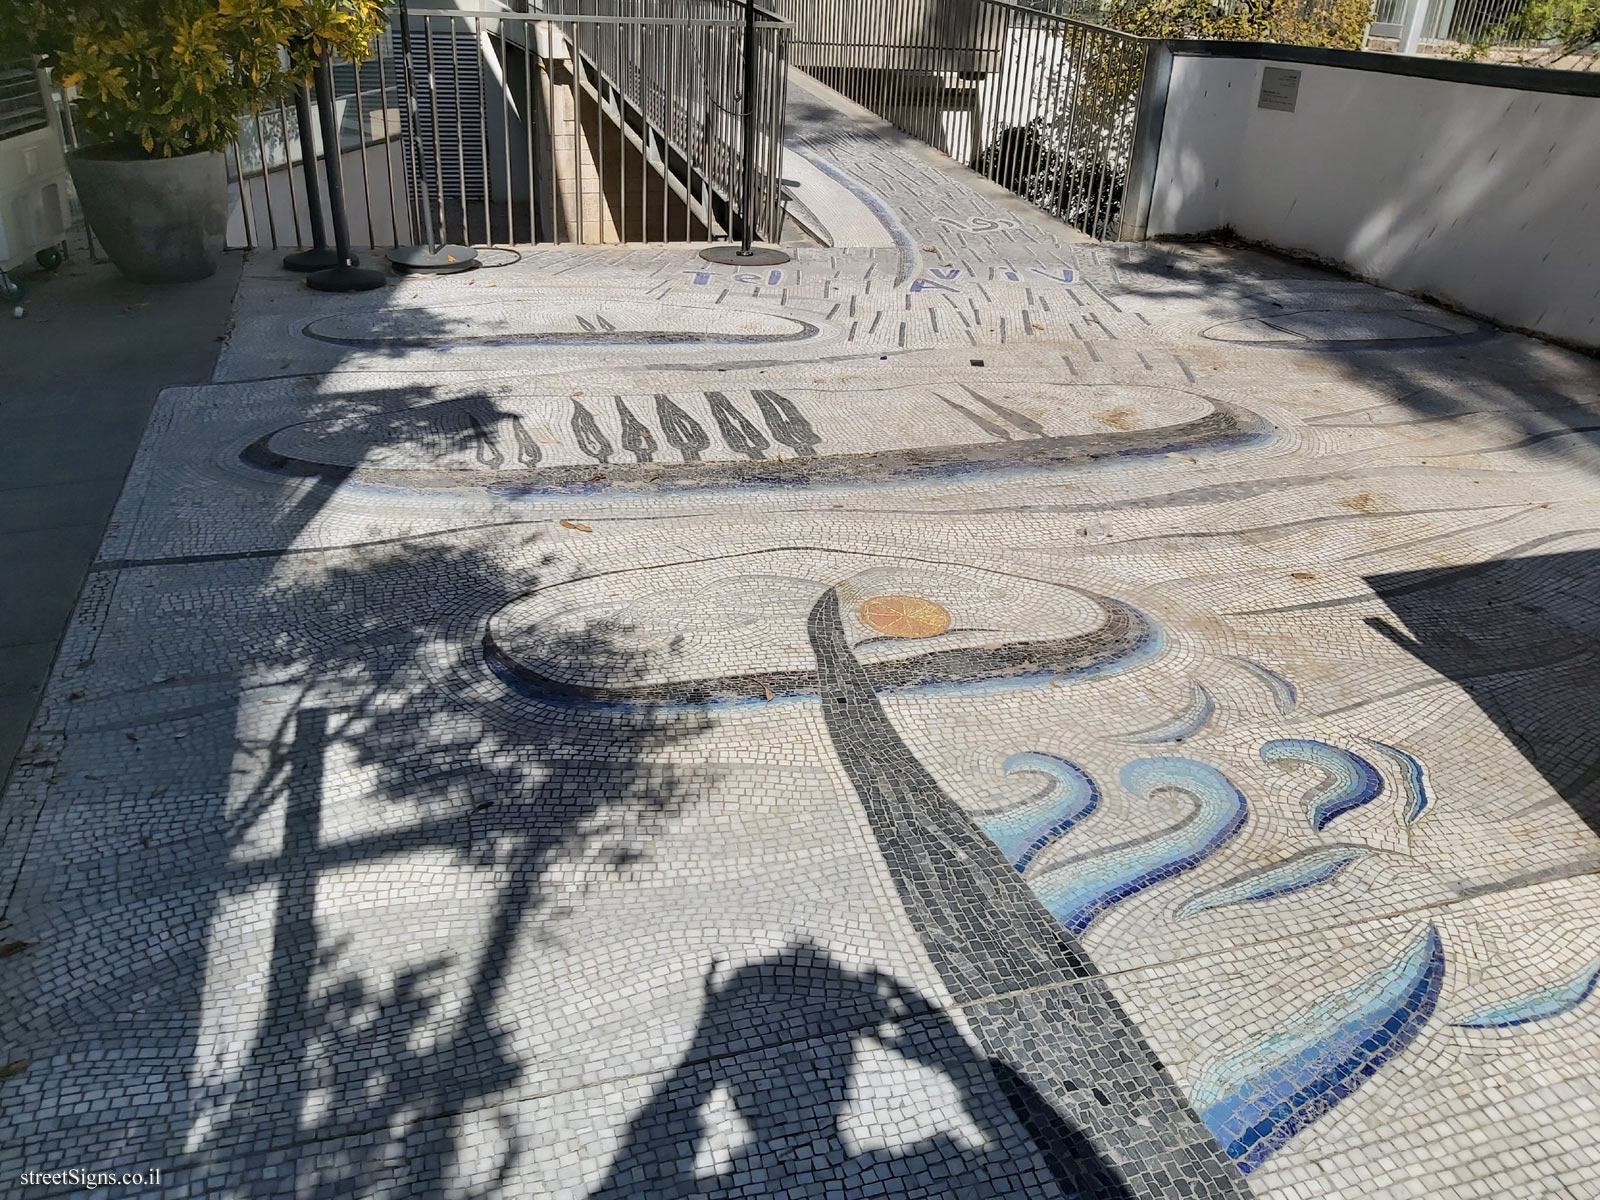 Tel Aviv - Lola Beer Ebner Sculpture Garden - Tel Aviv Mosaic - Enzo Cucchi - Tel Aviv Museum